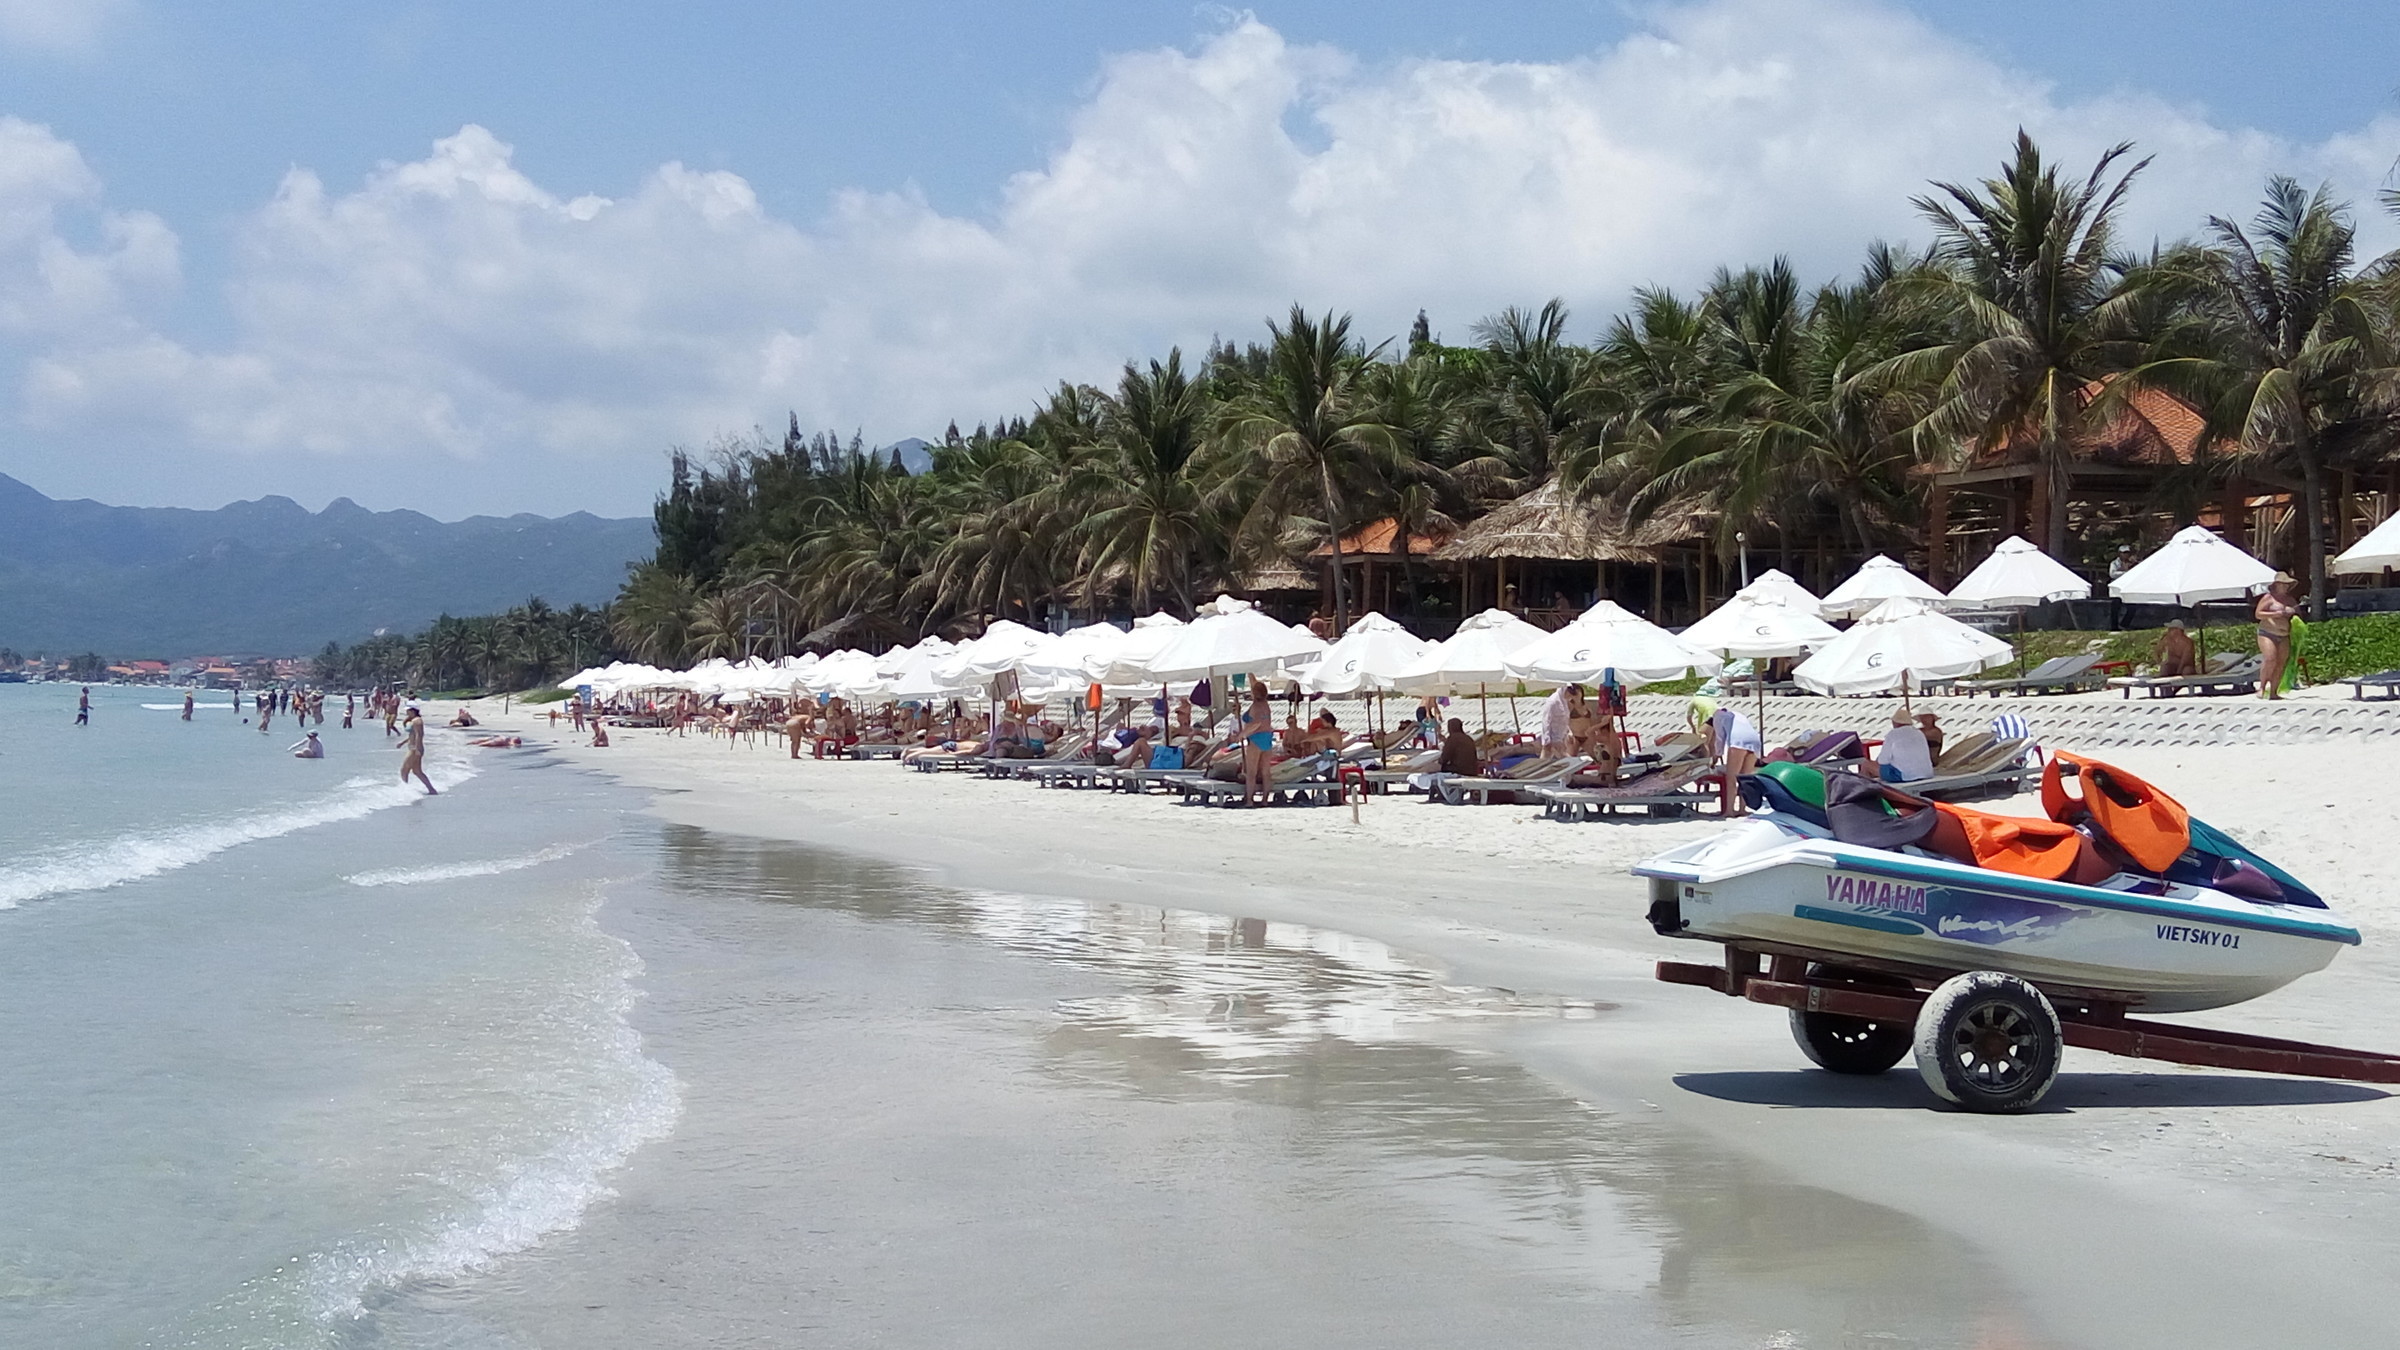 Доклет, вьетнам: описание и инфраструктура пляжа, как добраться, лучшие отели и рестораны с фото + отзывы туристов